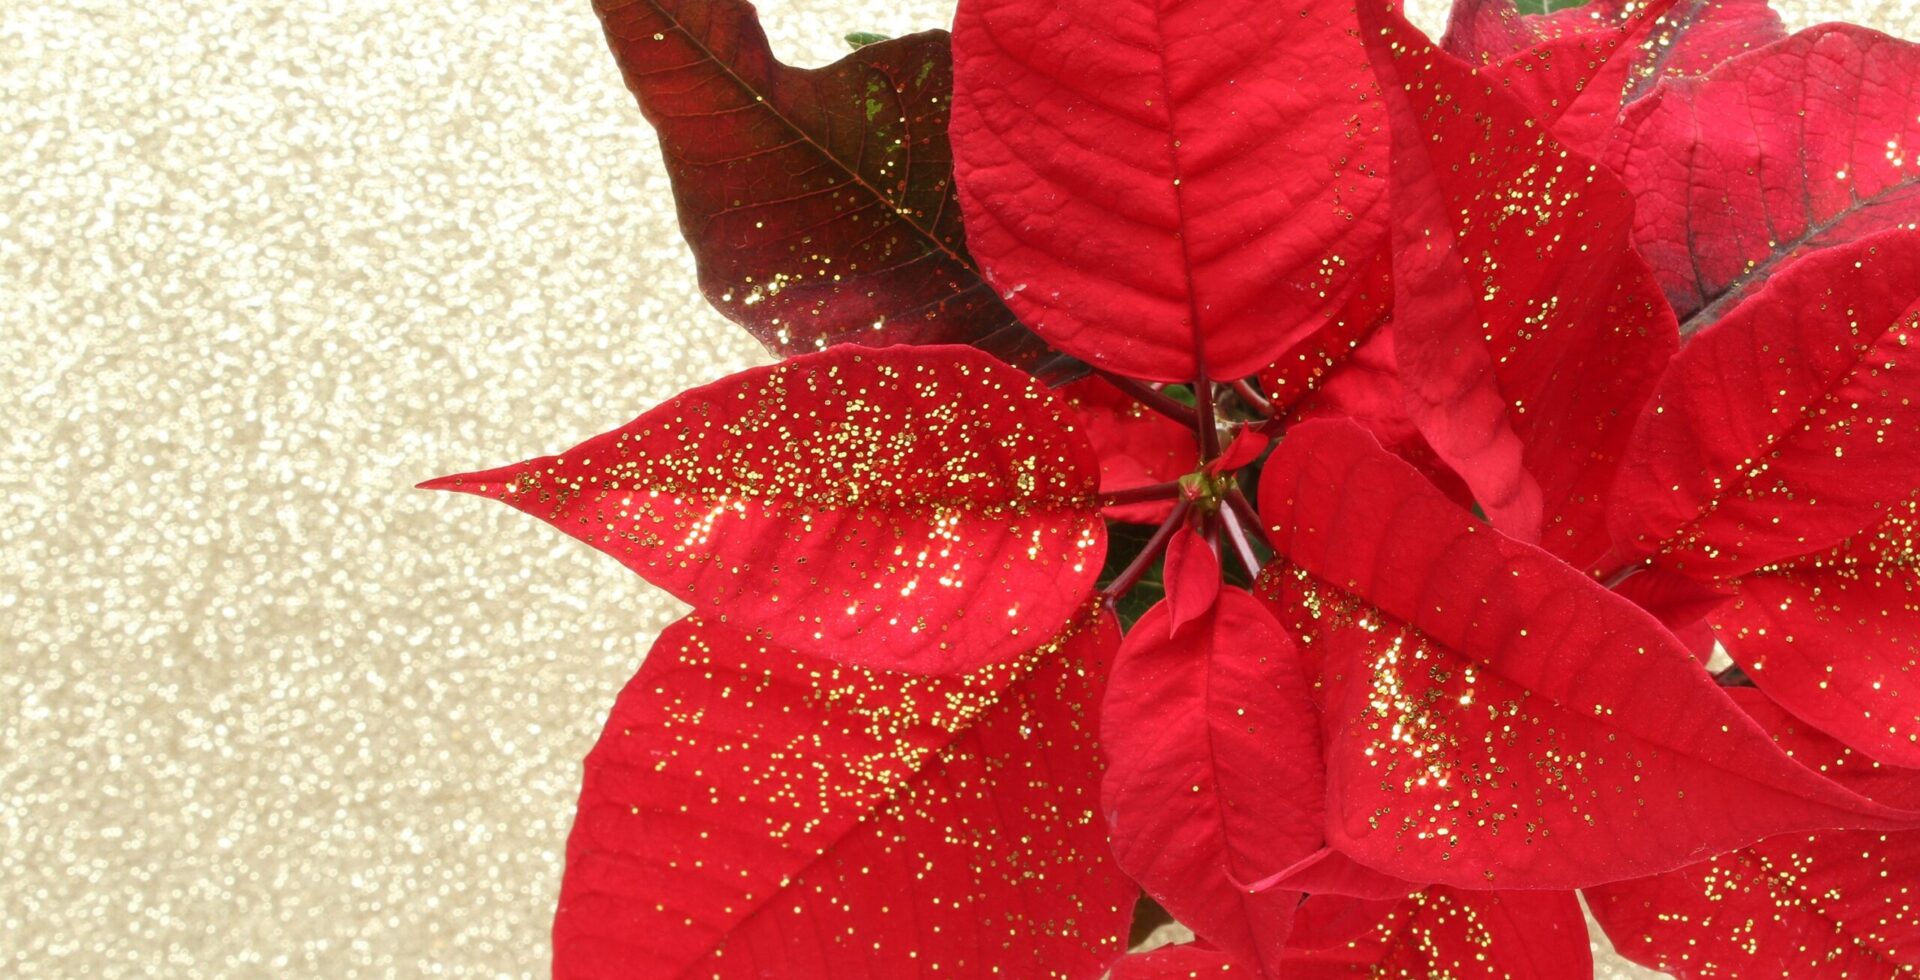 Poinsettia o flor de pascua - Planta de Navidad